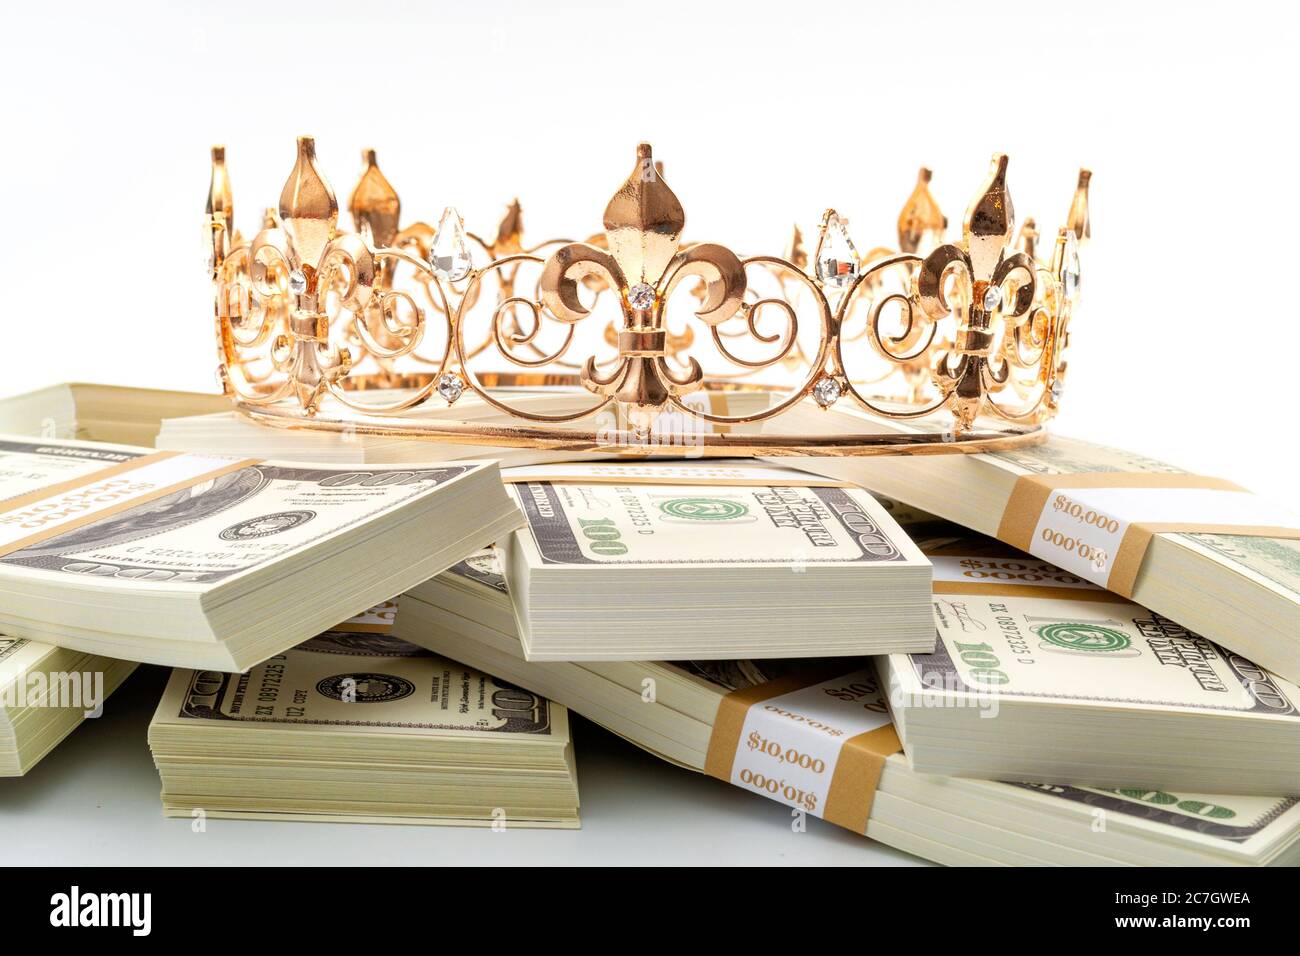 L'argent est roi, Trésor économique et financier de retraite réussie idée conceptuelle avec couronne en métal d'or sur pile de 100 dollars de billets isolés sur le coup Banque D'Images